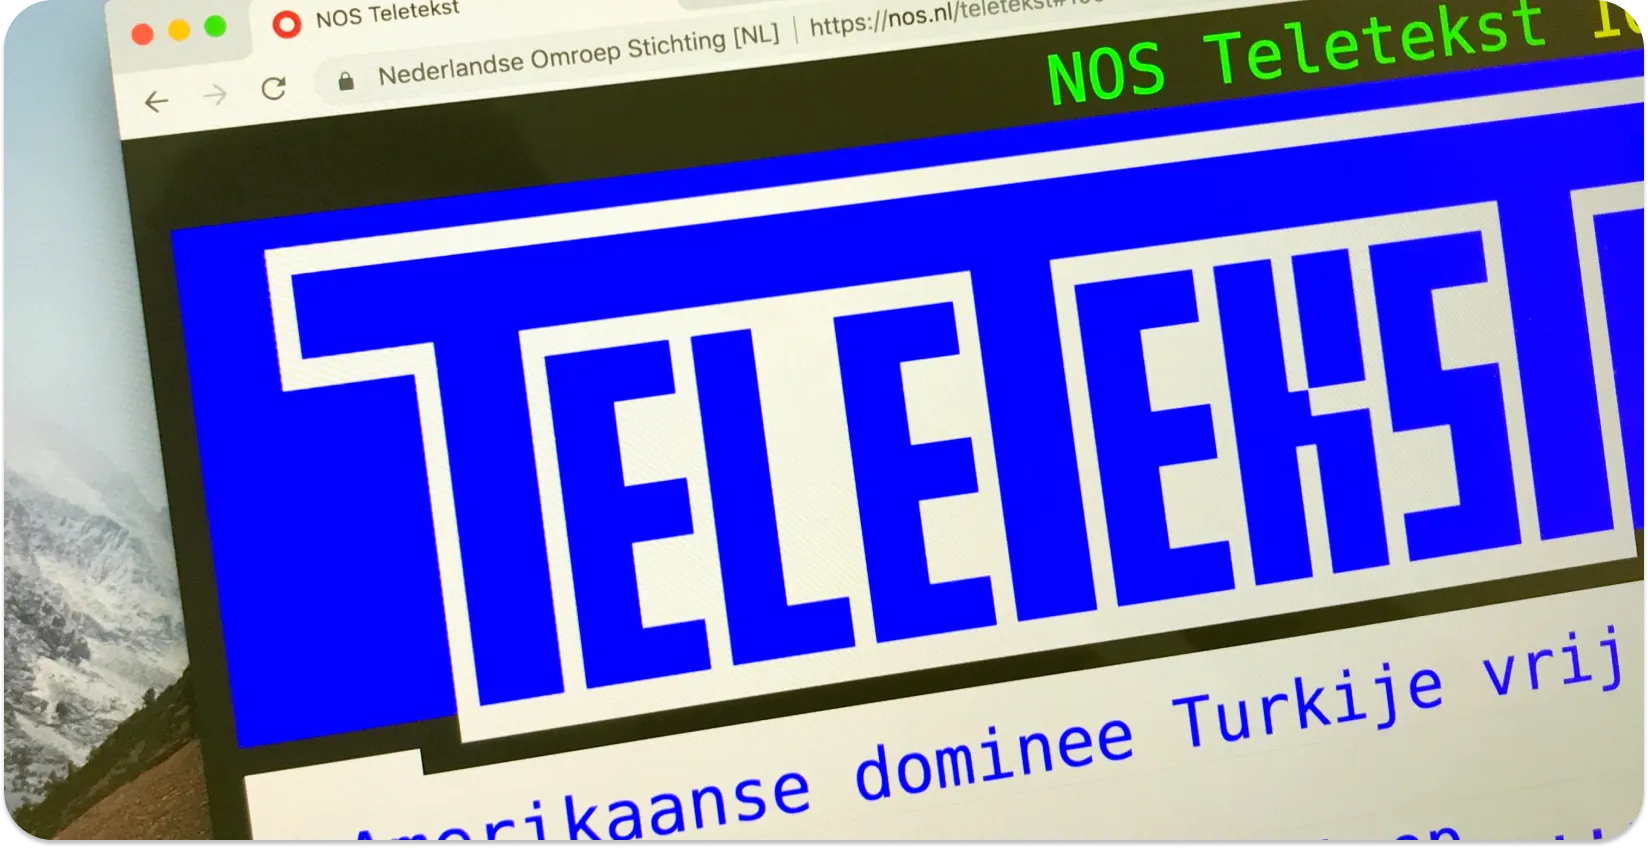 Kompiuterio ekranas, kuriame rodomi teleteksto subtitrai su naujienų antraštėmis, iliustruojantys teleteksto subtitrų formatą.